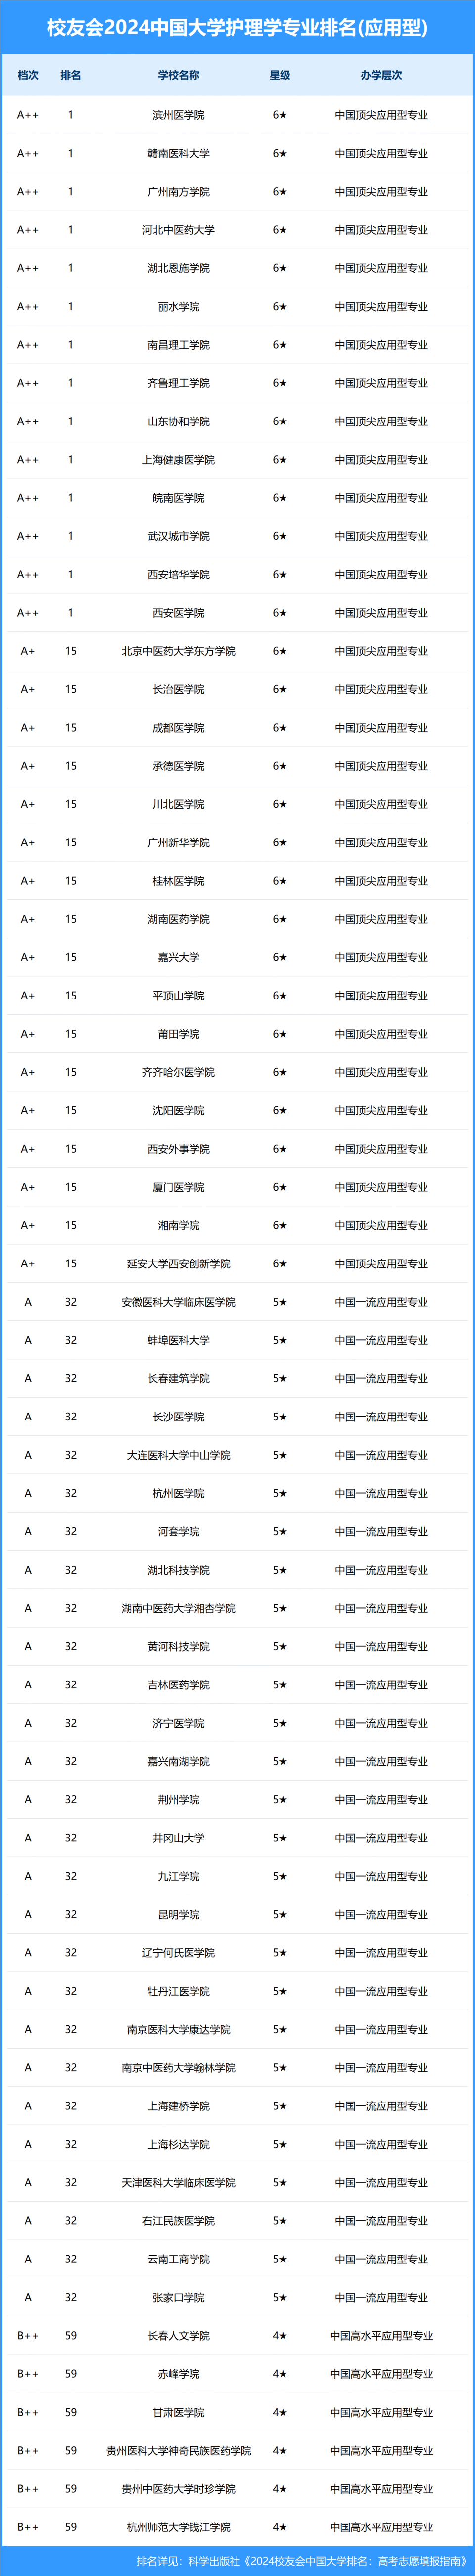 四川医科大学 排名图片